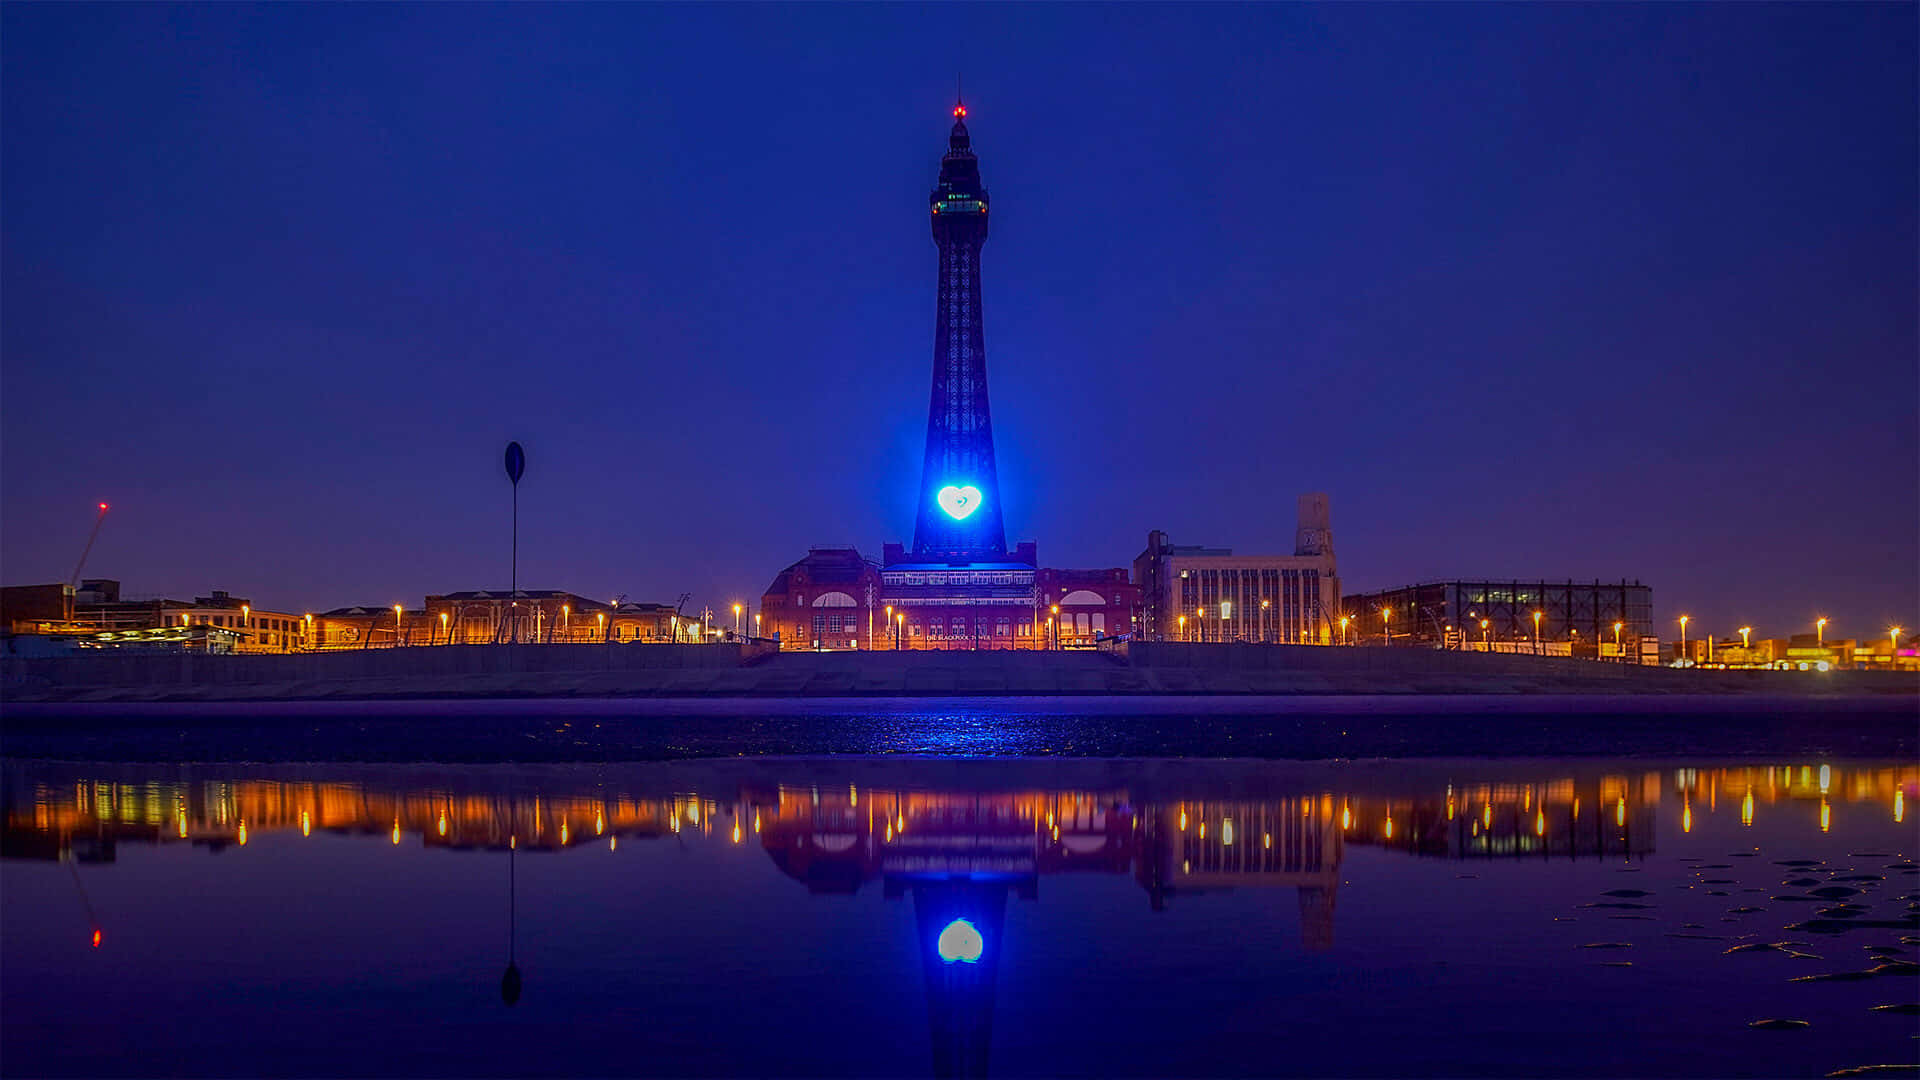 Blackpooltower Bei Nacht Mit Blauem Licht Wallpaper